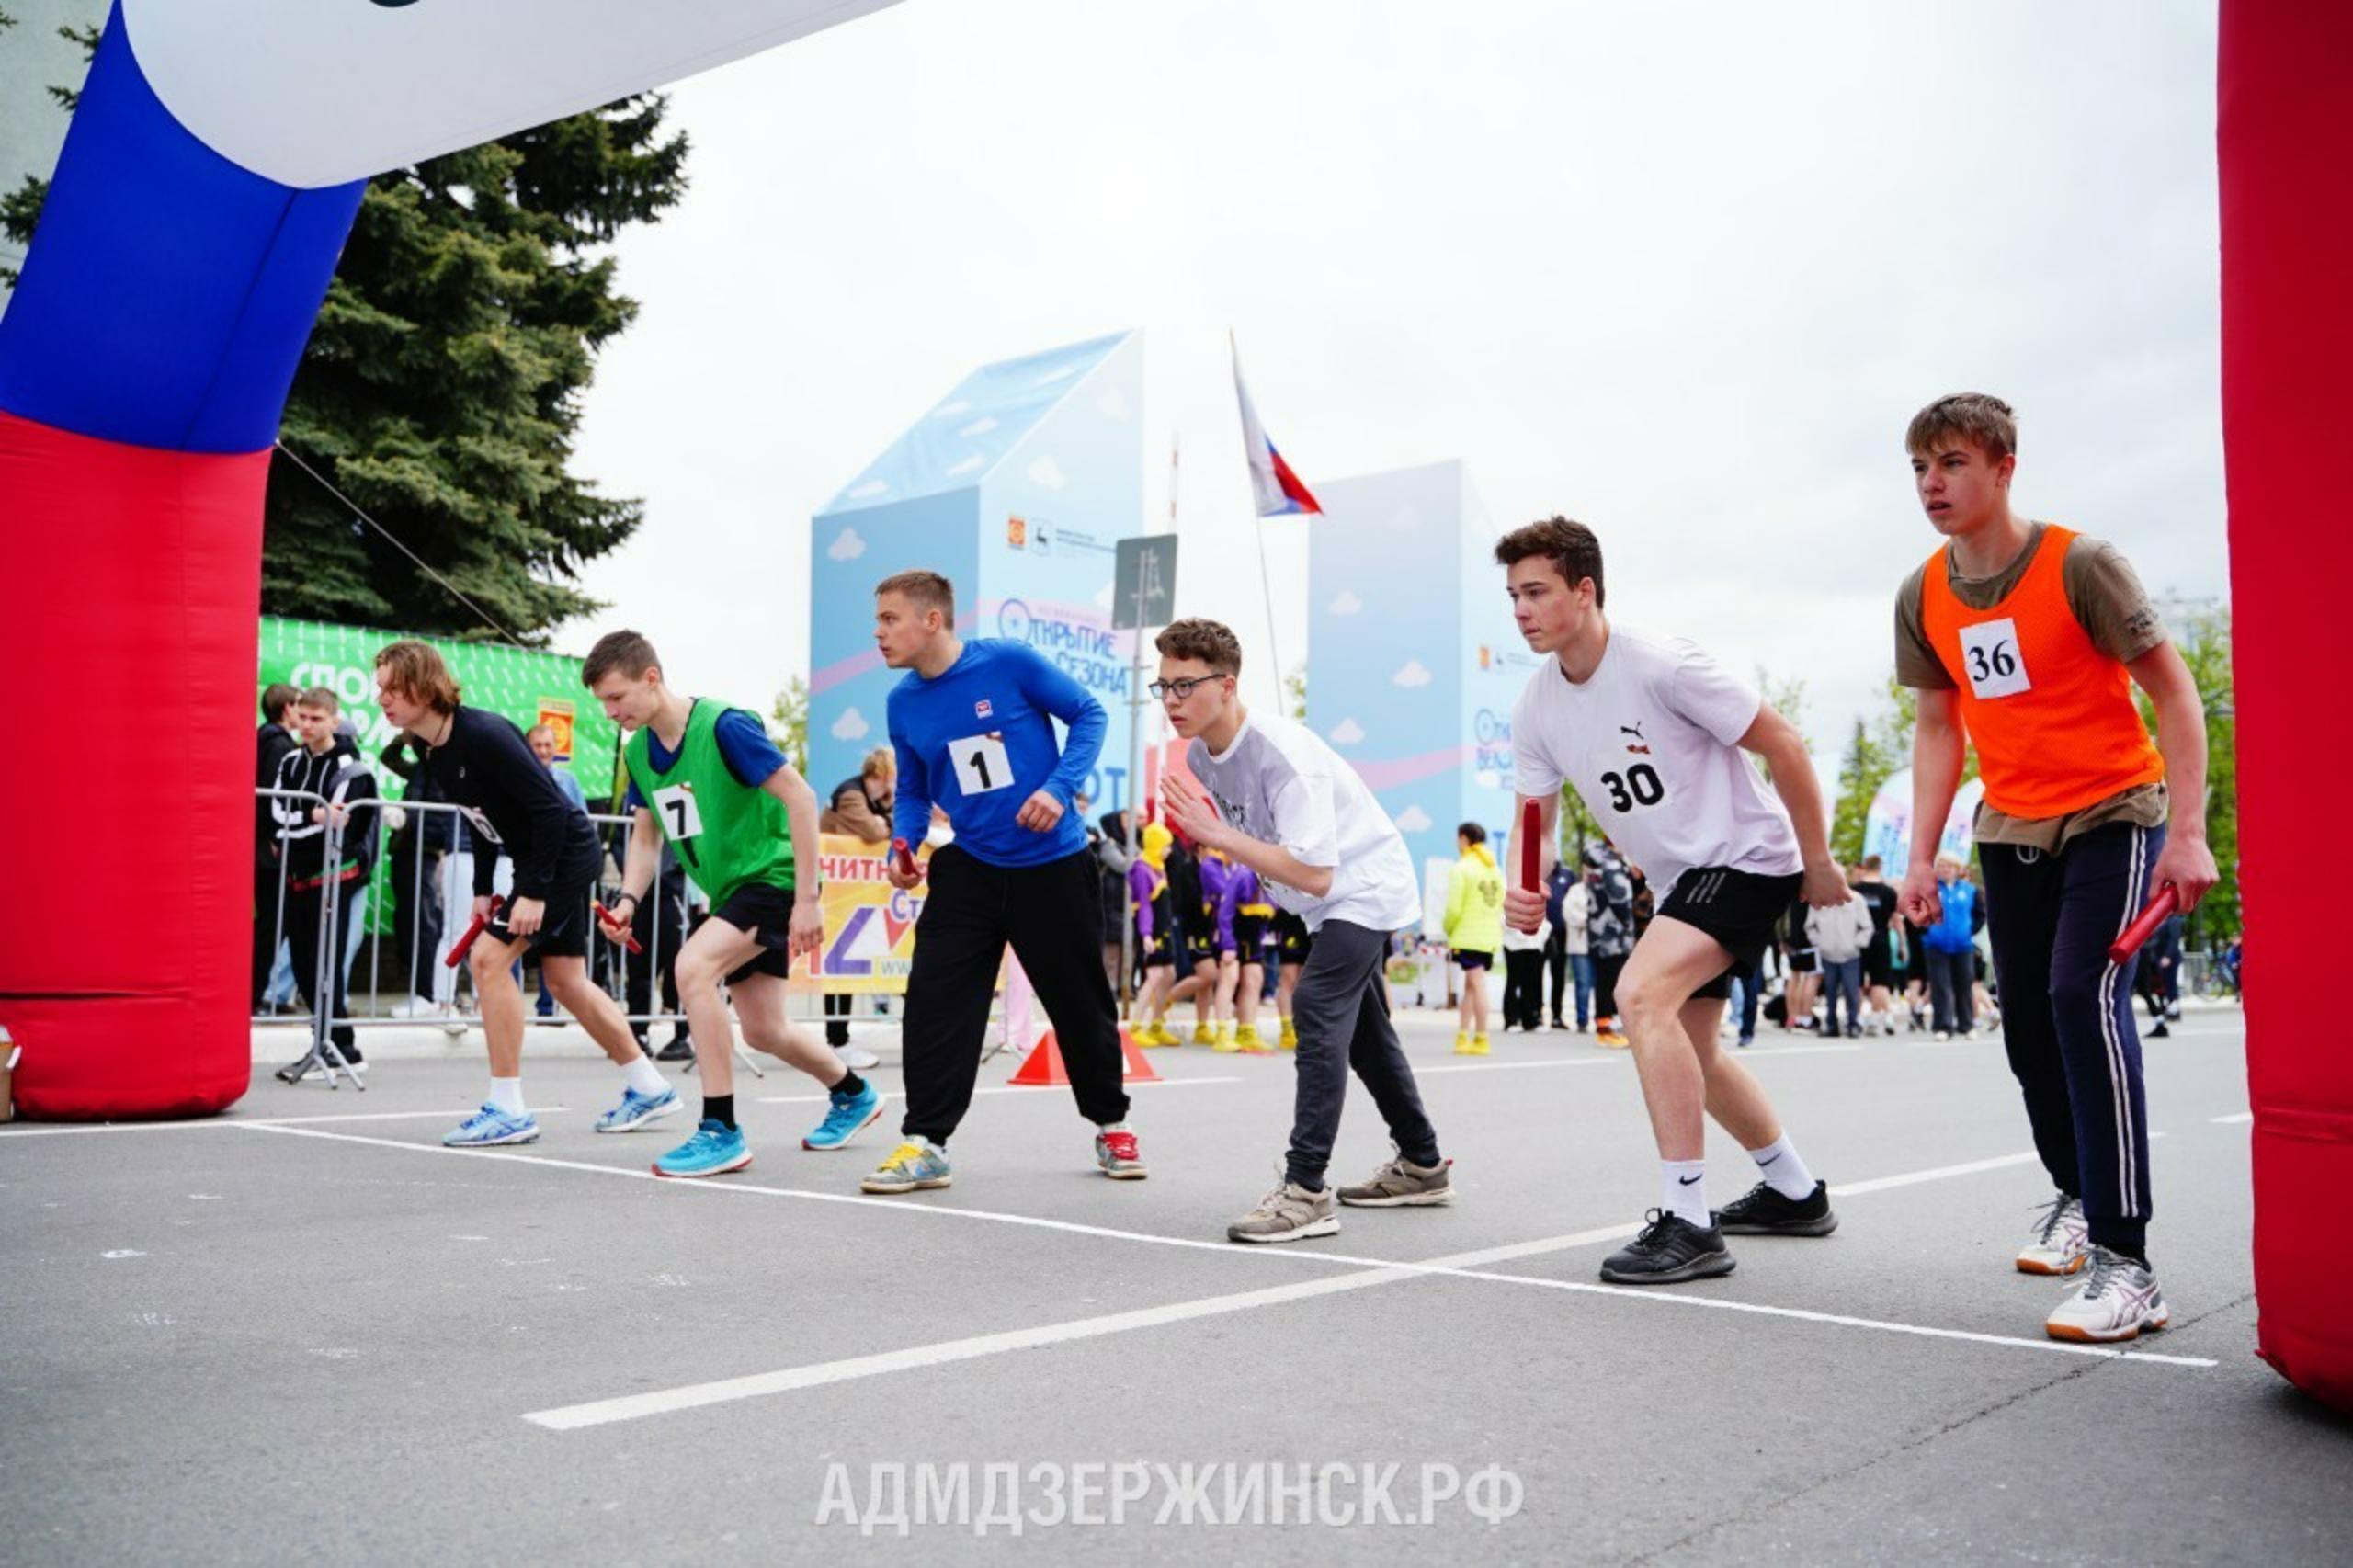 Более 400 человек объединил легкоатлетический пробег в Дзержинске